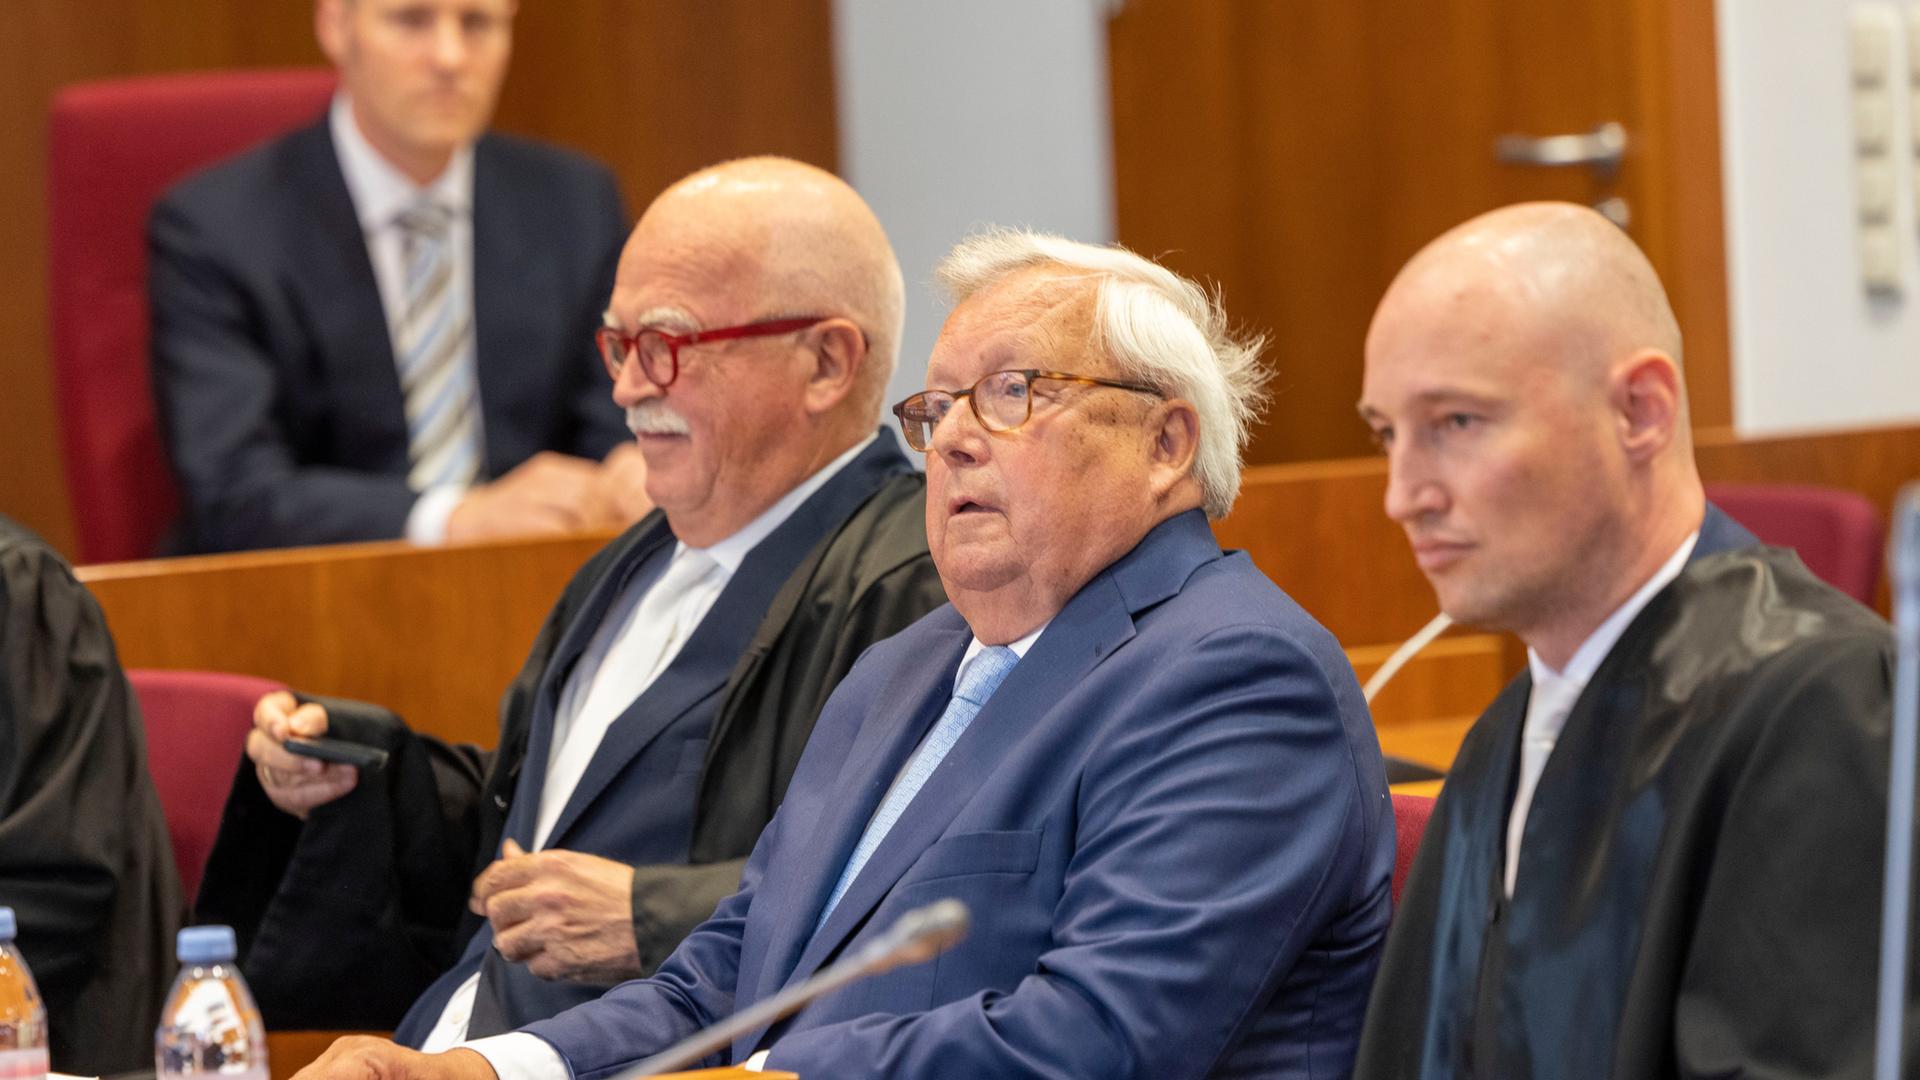 Christian Olearius (M) zwischen seinen Anwälten Peter Gauweiler (l) und Rudolf Hübner im Gerichtssaal im Bonner Landgericht